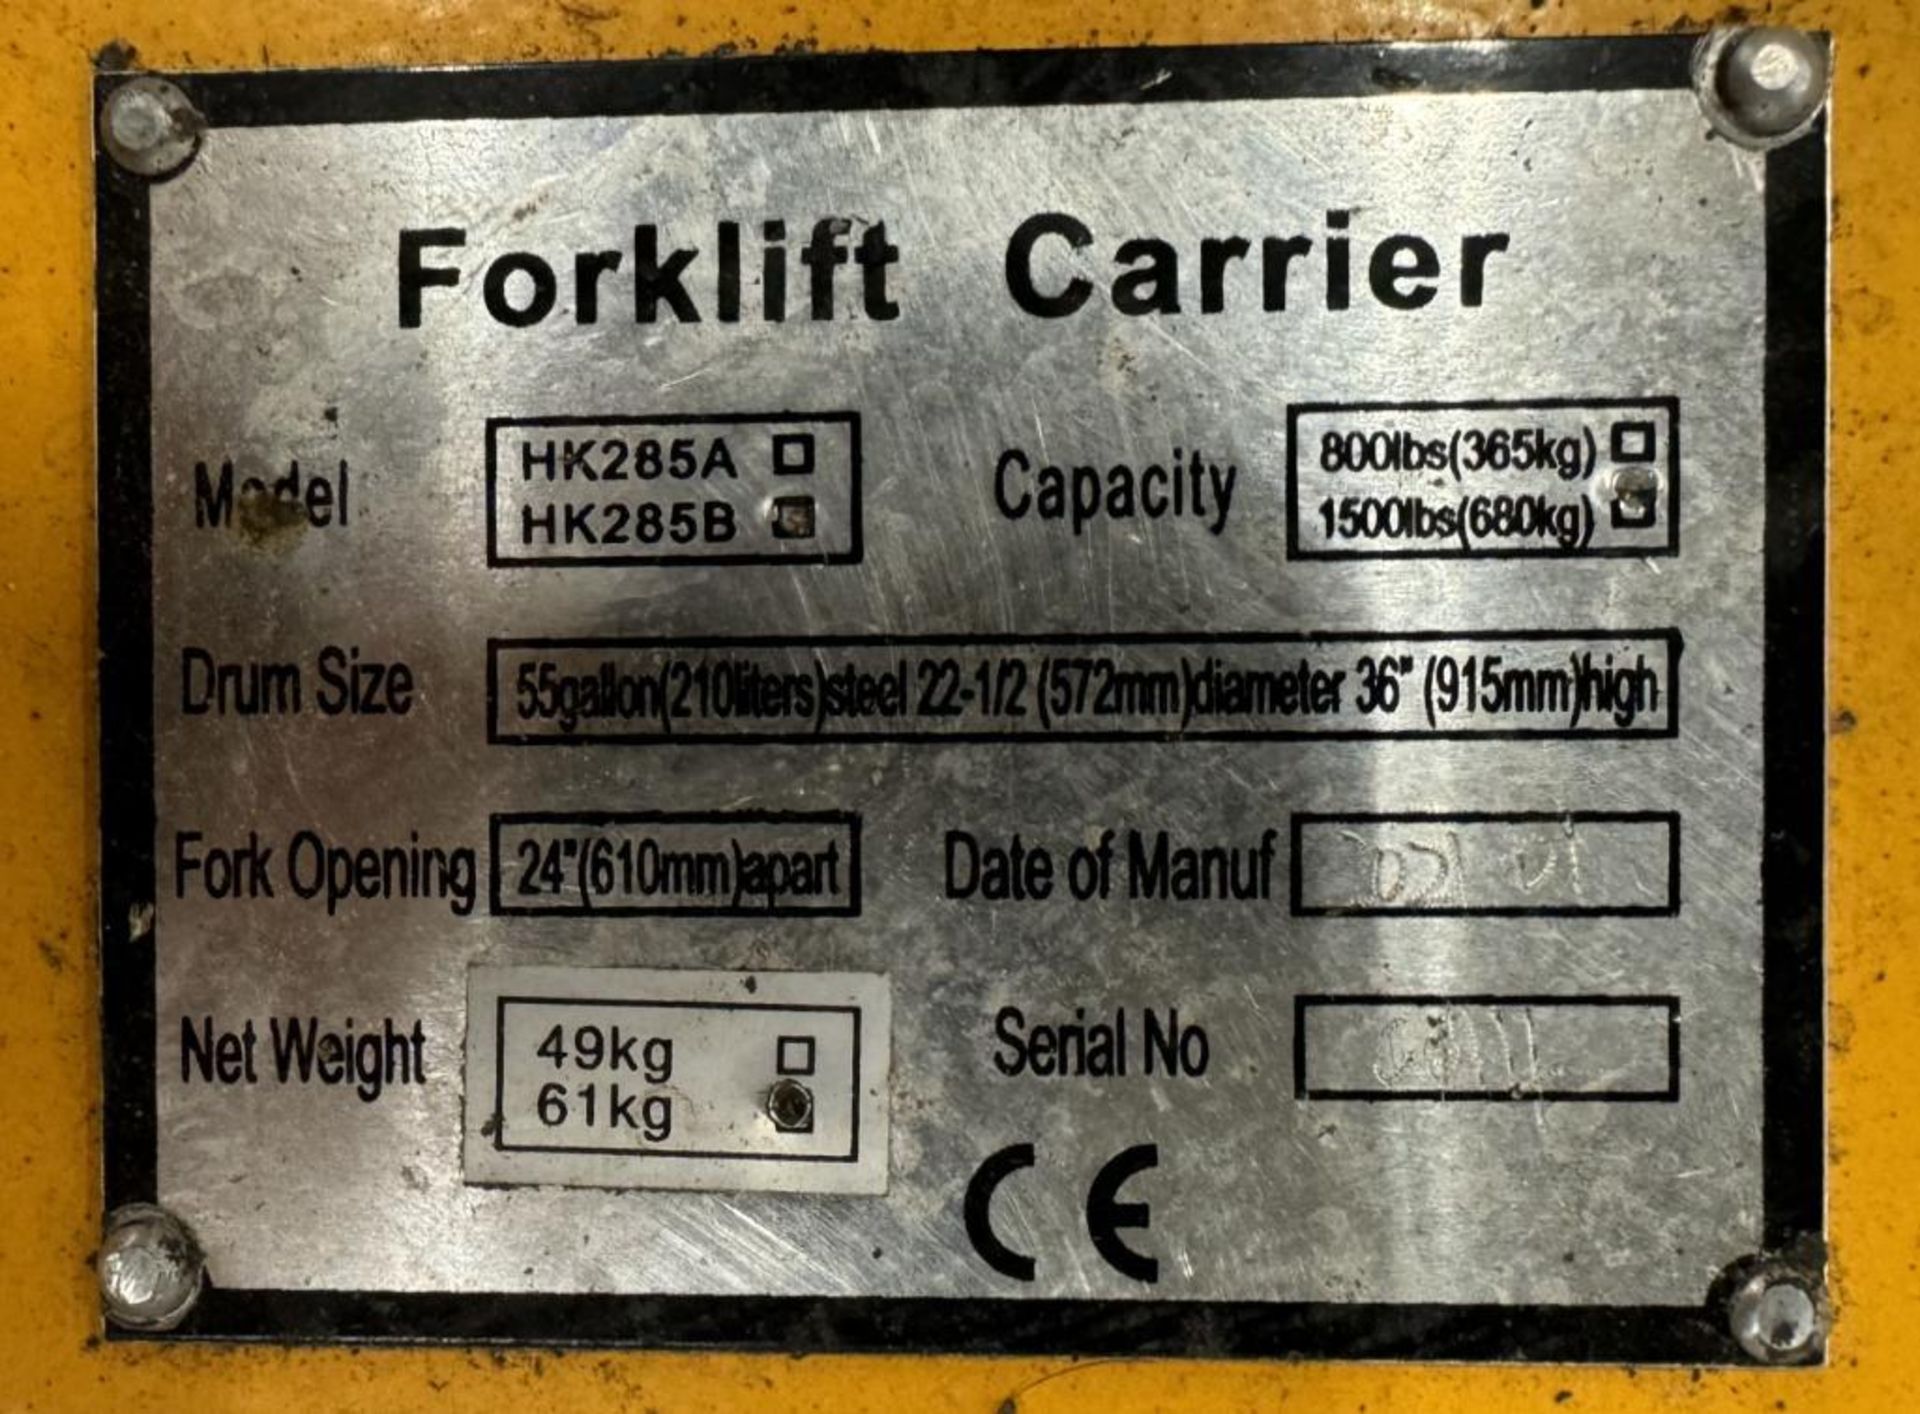 Global Industrial 1500# Forklift Tilting Drum Dumper, Model HK285B. - Image 5 of 5